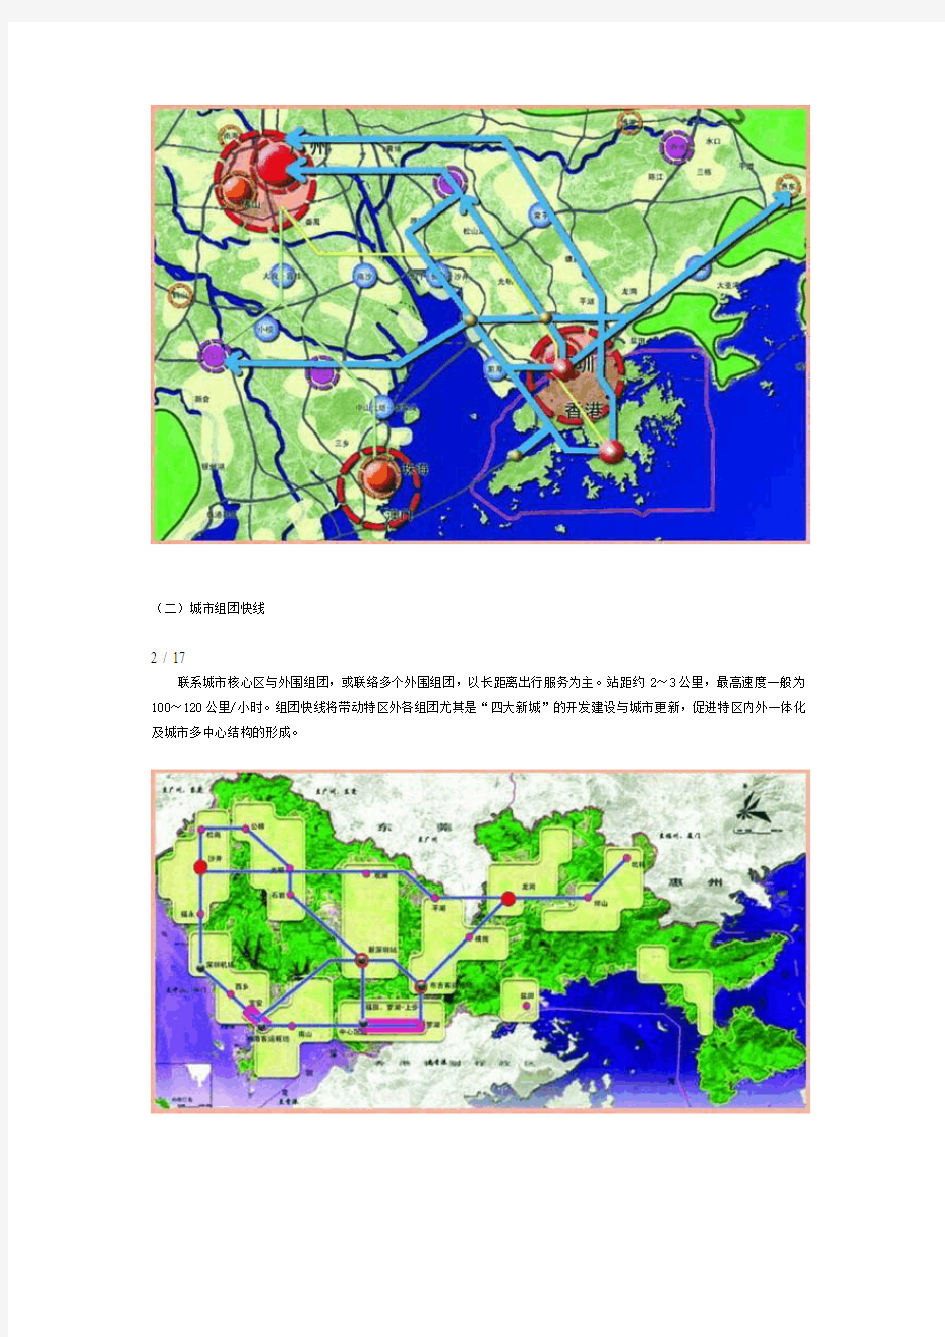 深圳轨道交通规划及轨道近期建设规划方案